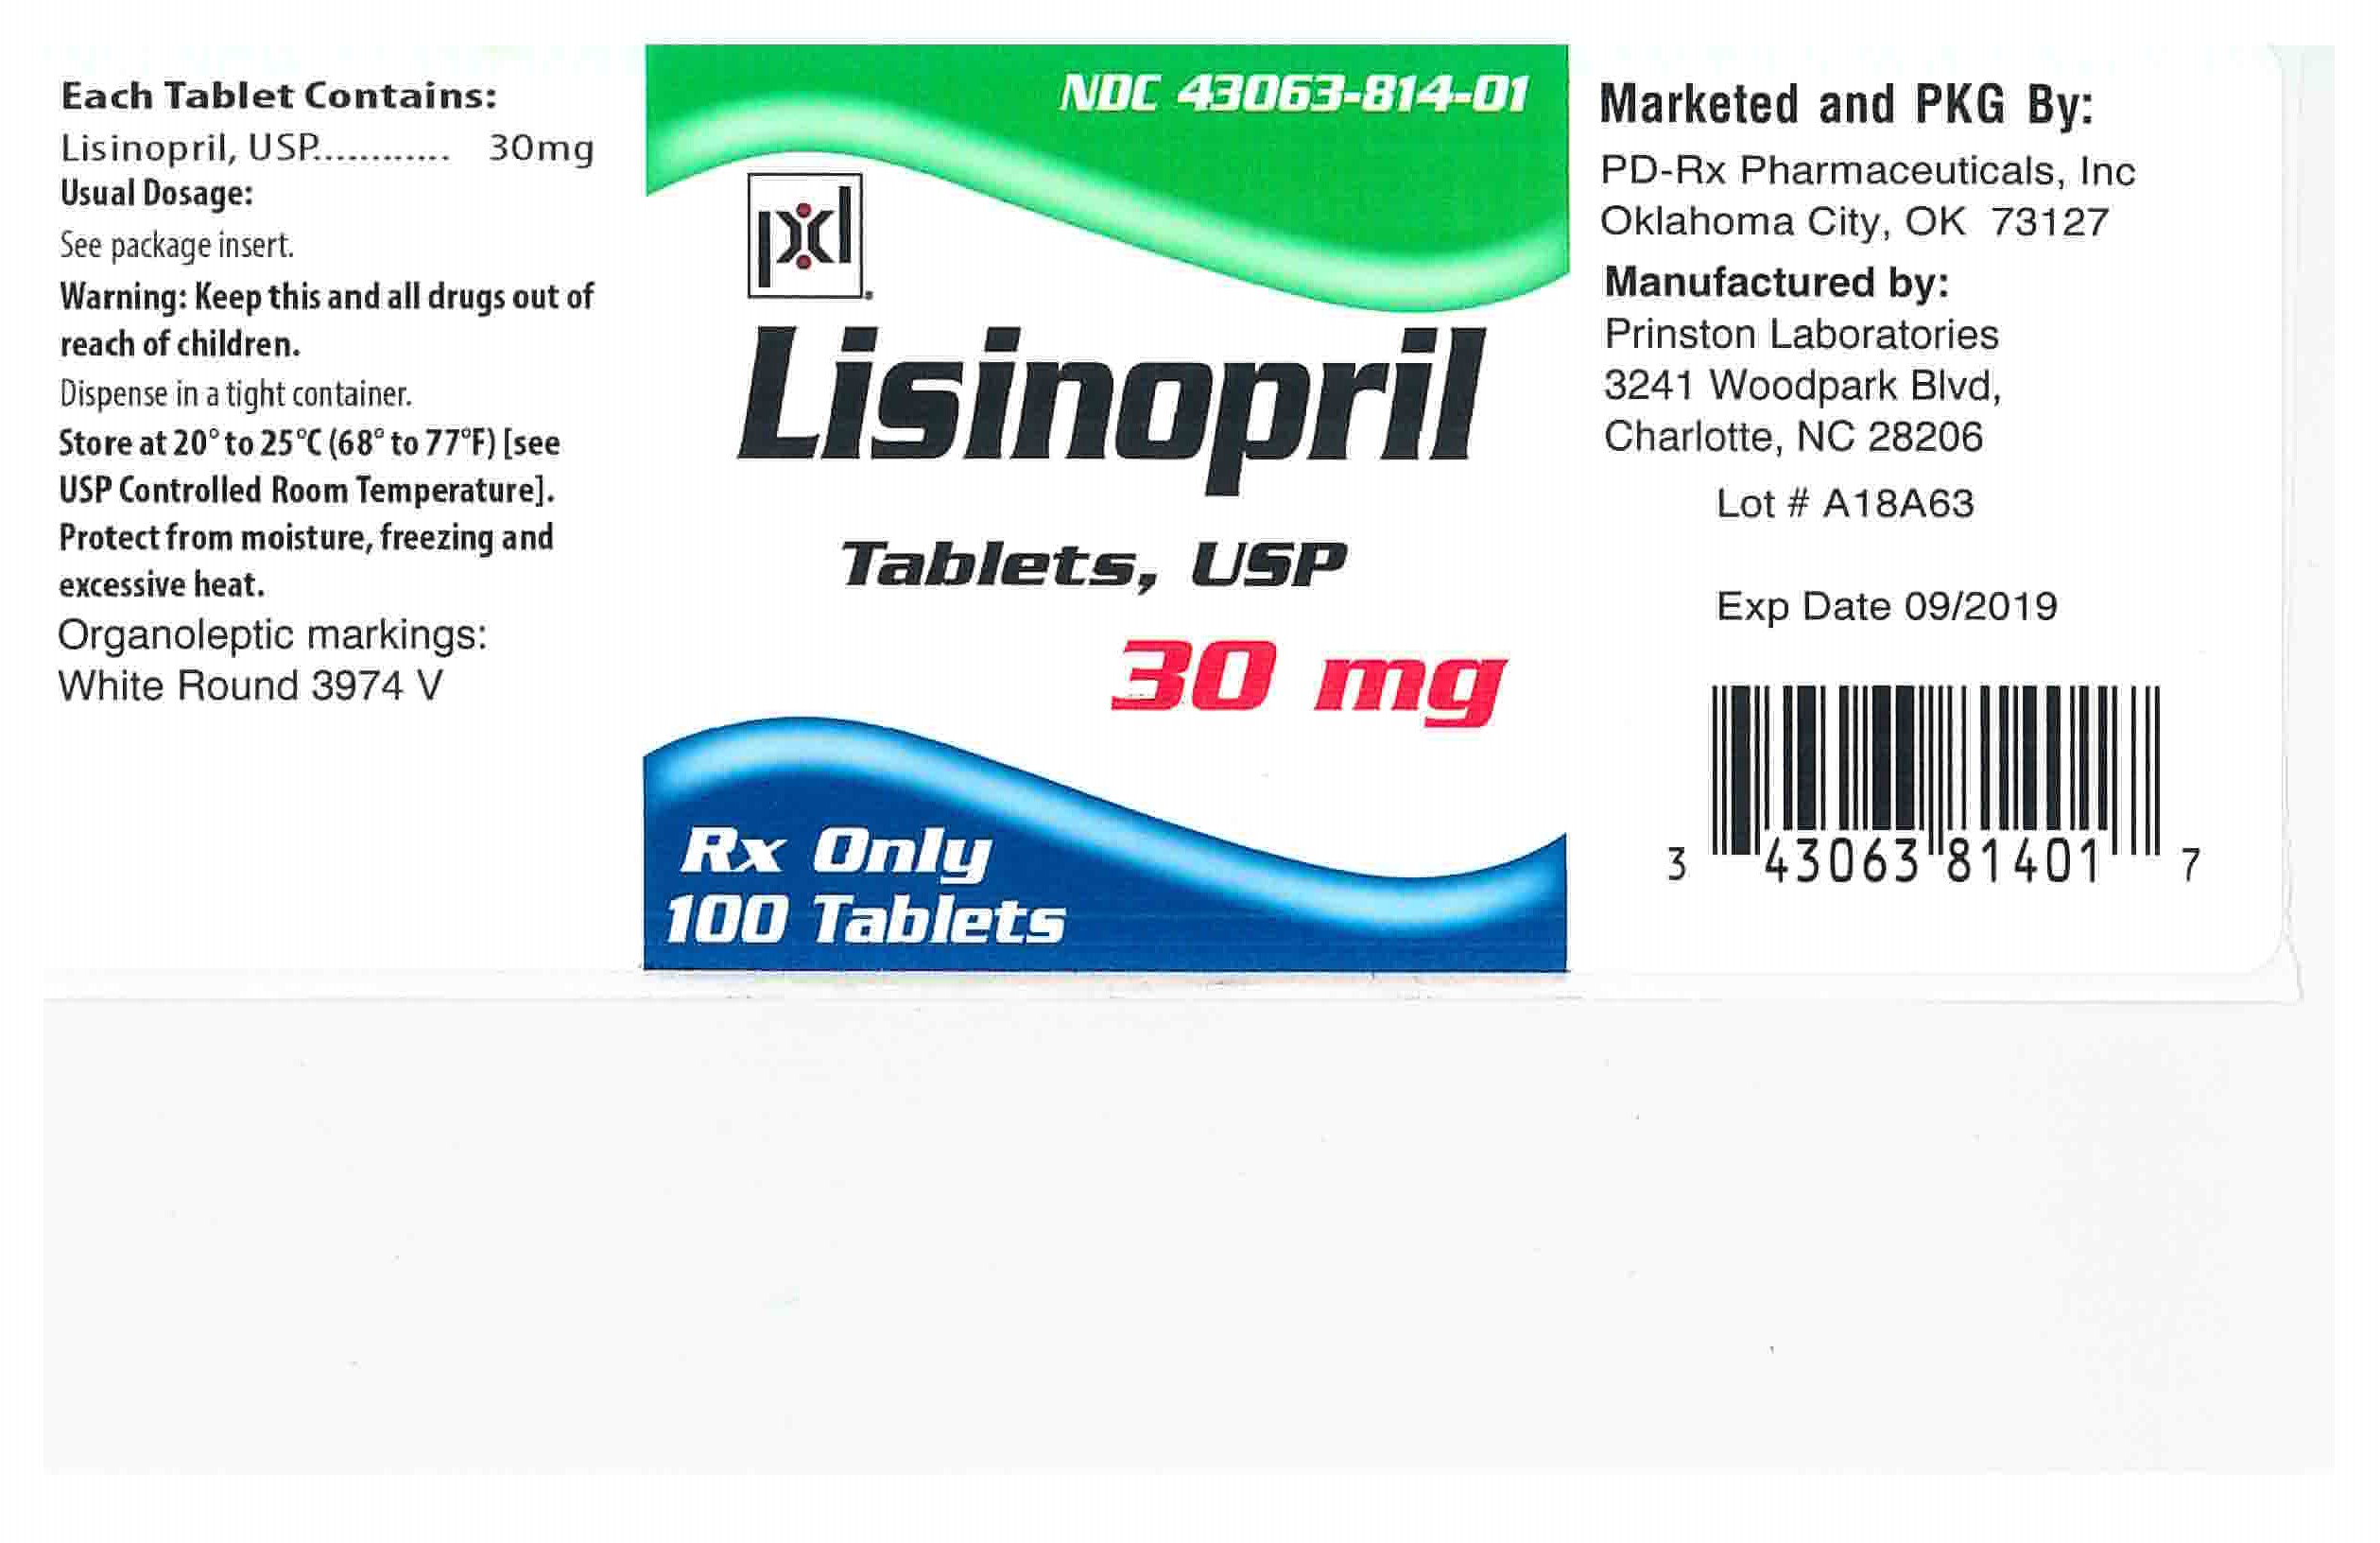 Label 30 mg